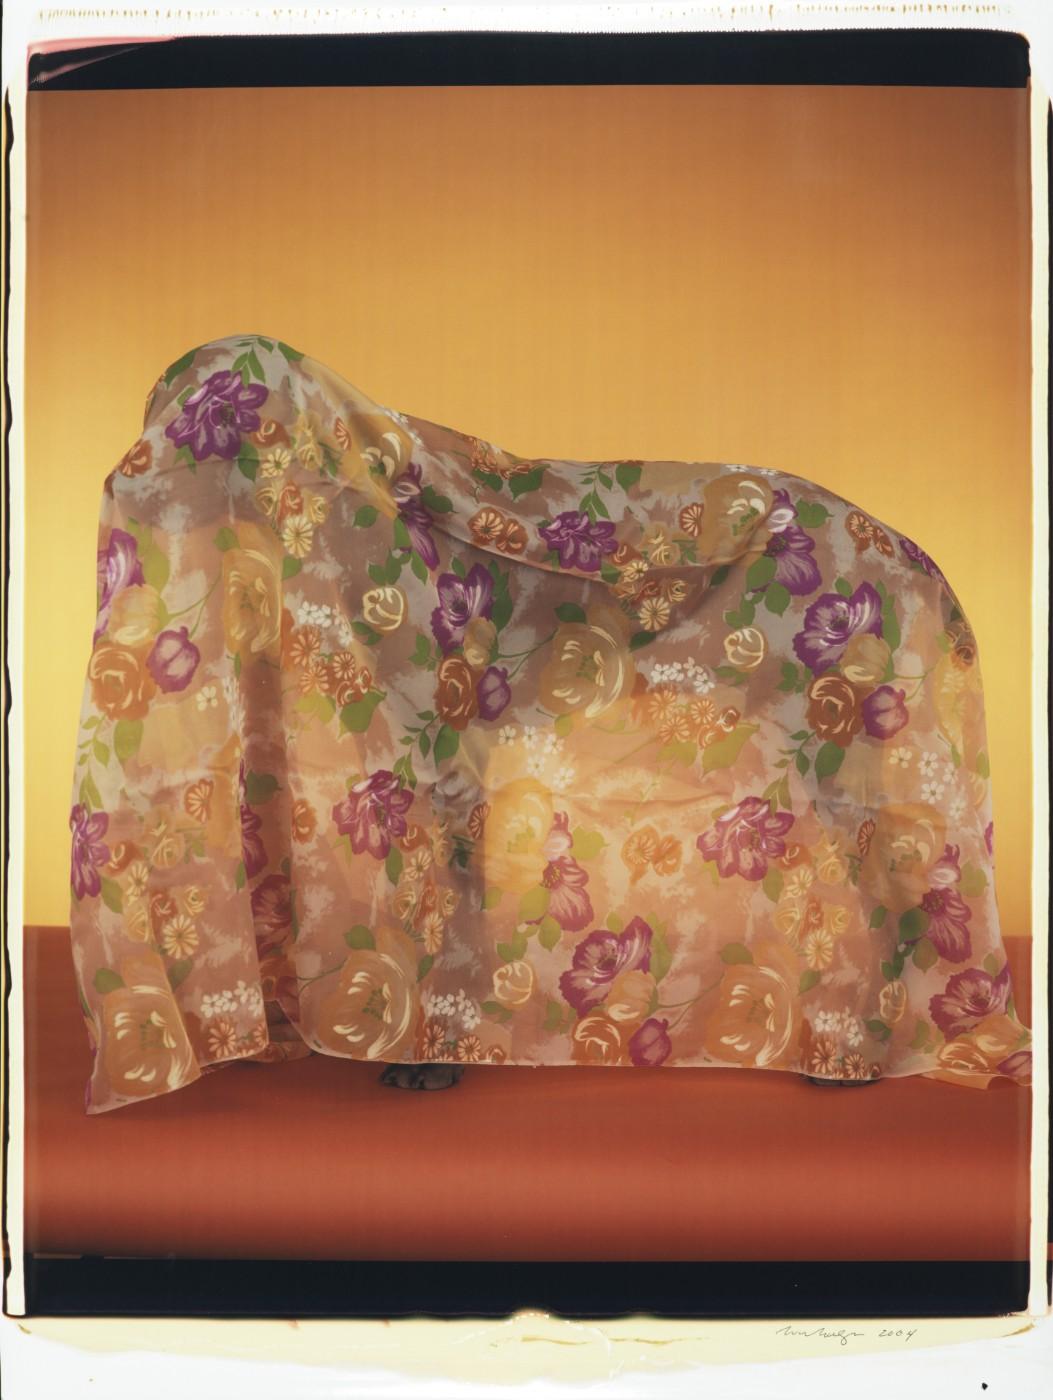 William Wegman, Rain Coat, 2004. Color Polaroid, 24 x 20 in.